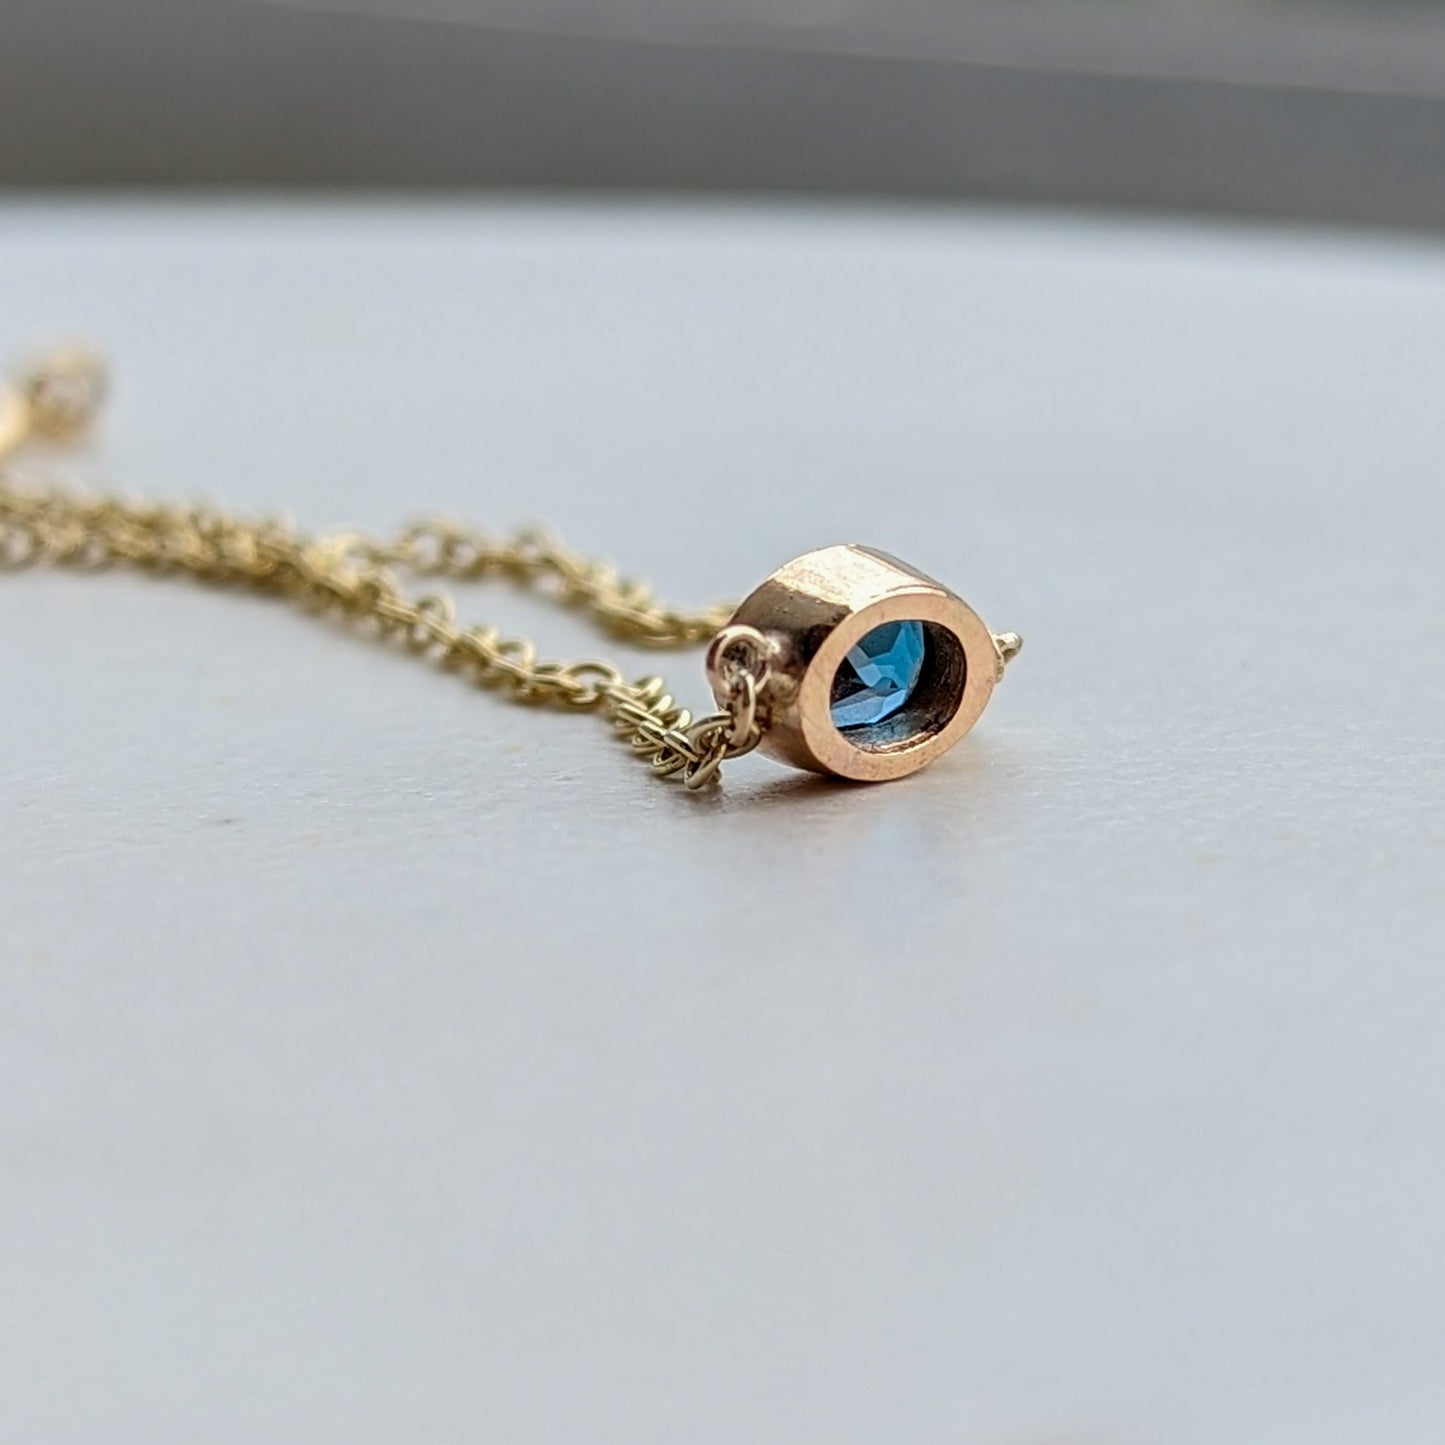 Gold bracelet with oval London blue topaz